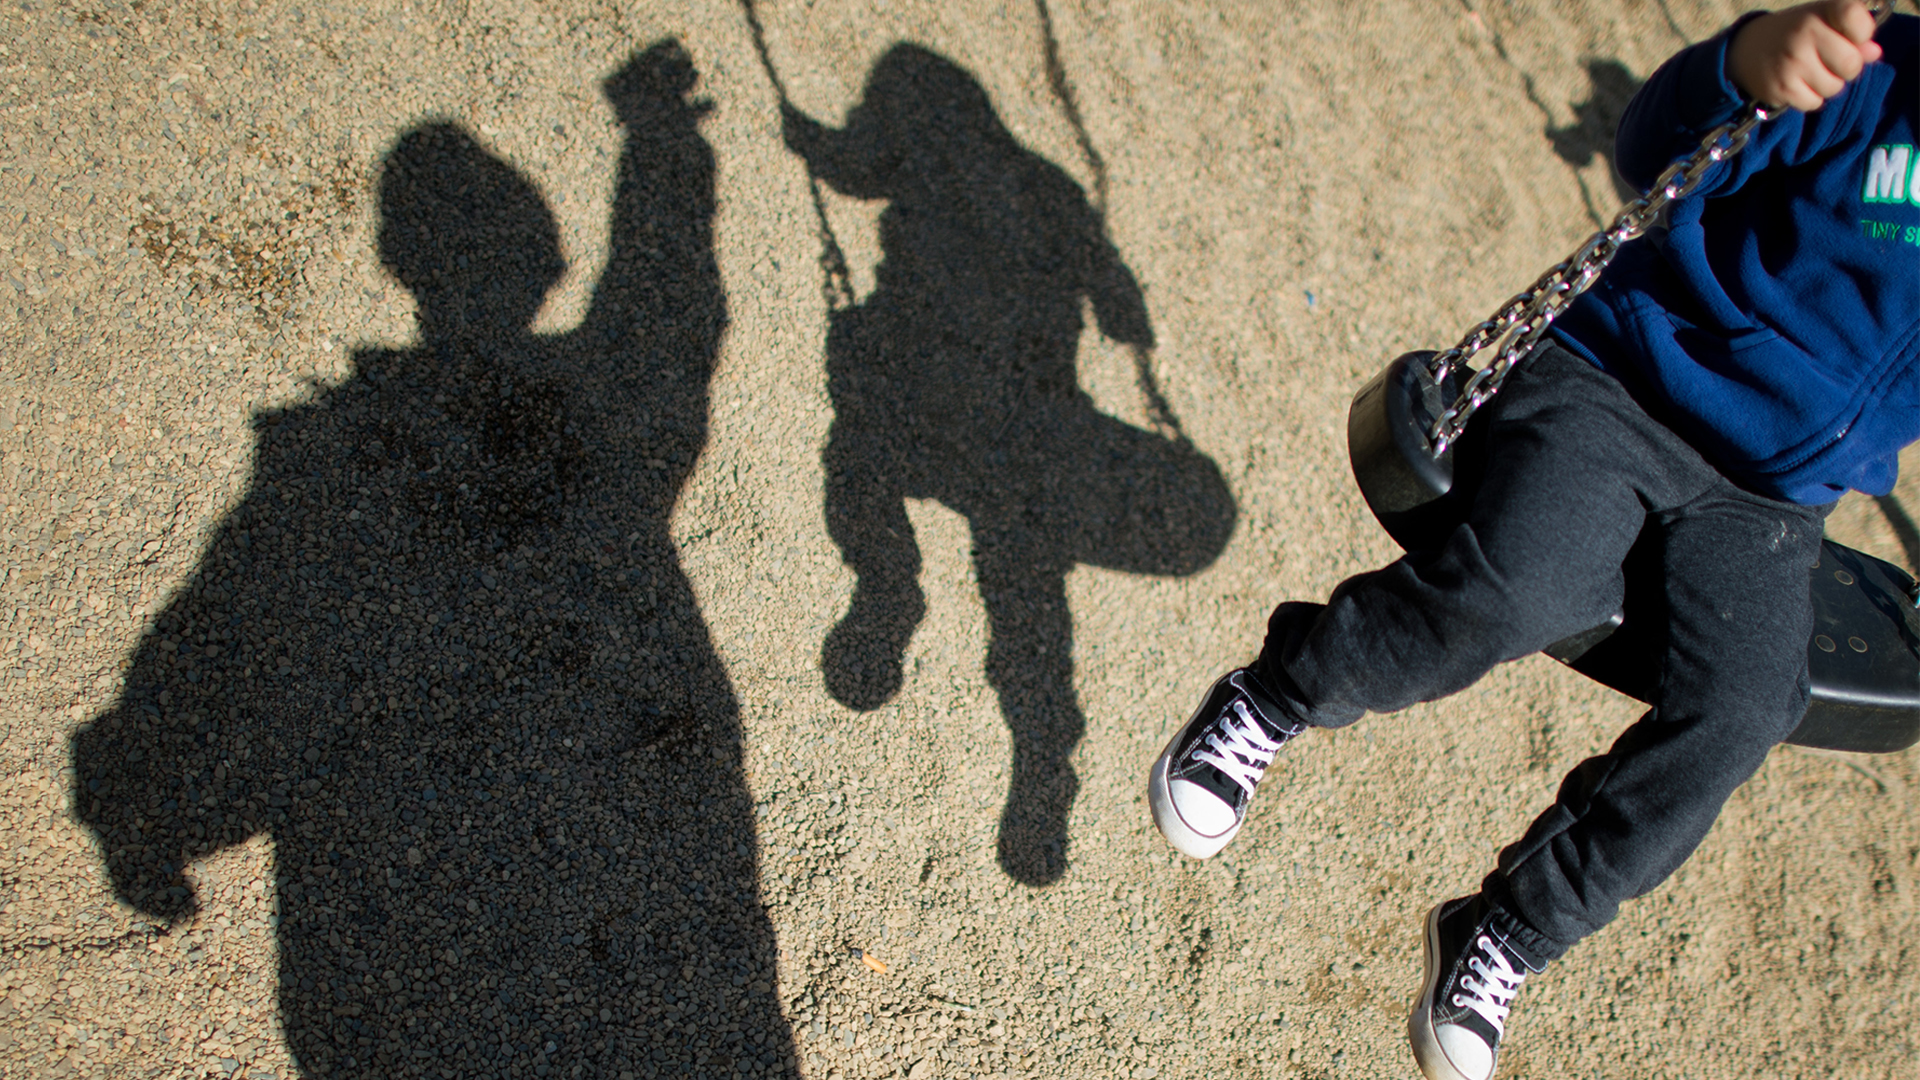 Schatten von einem Mann und einem Jungen auf einer Schaukel. | Bildquelle: picture alliance / dpa